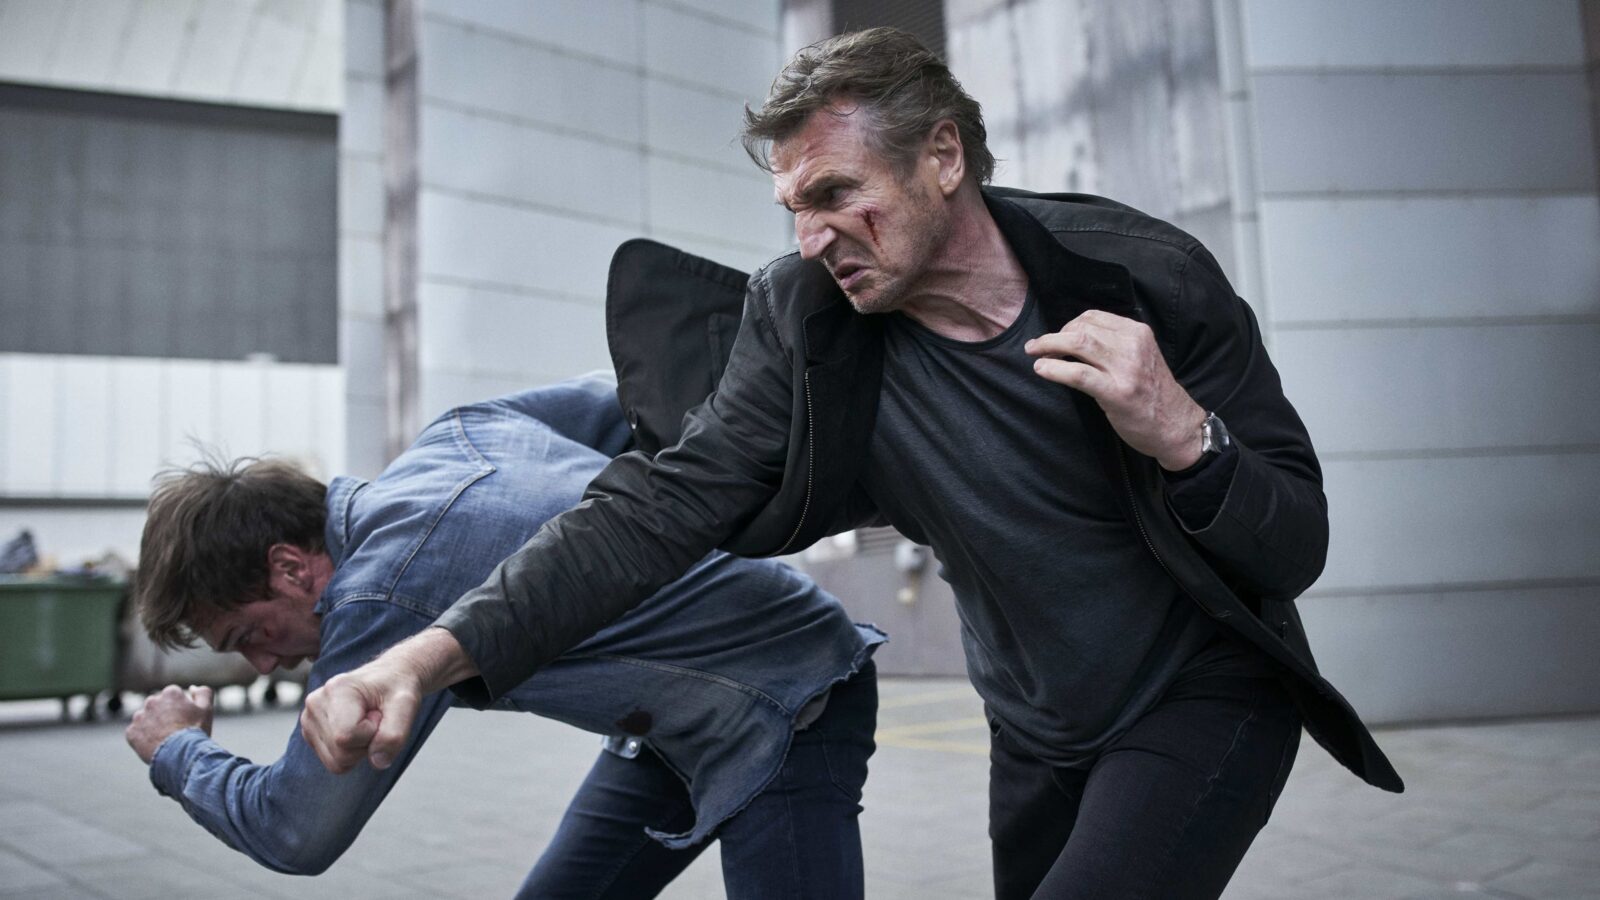 Ce soir à la TV : Liam Neeson casse des gueules dans ce film d'action passé inaperçu à sa sortie